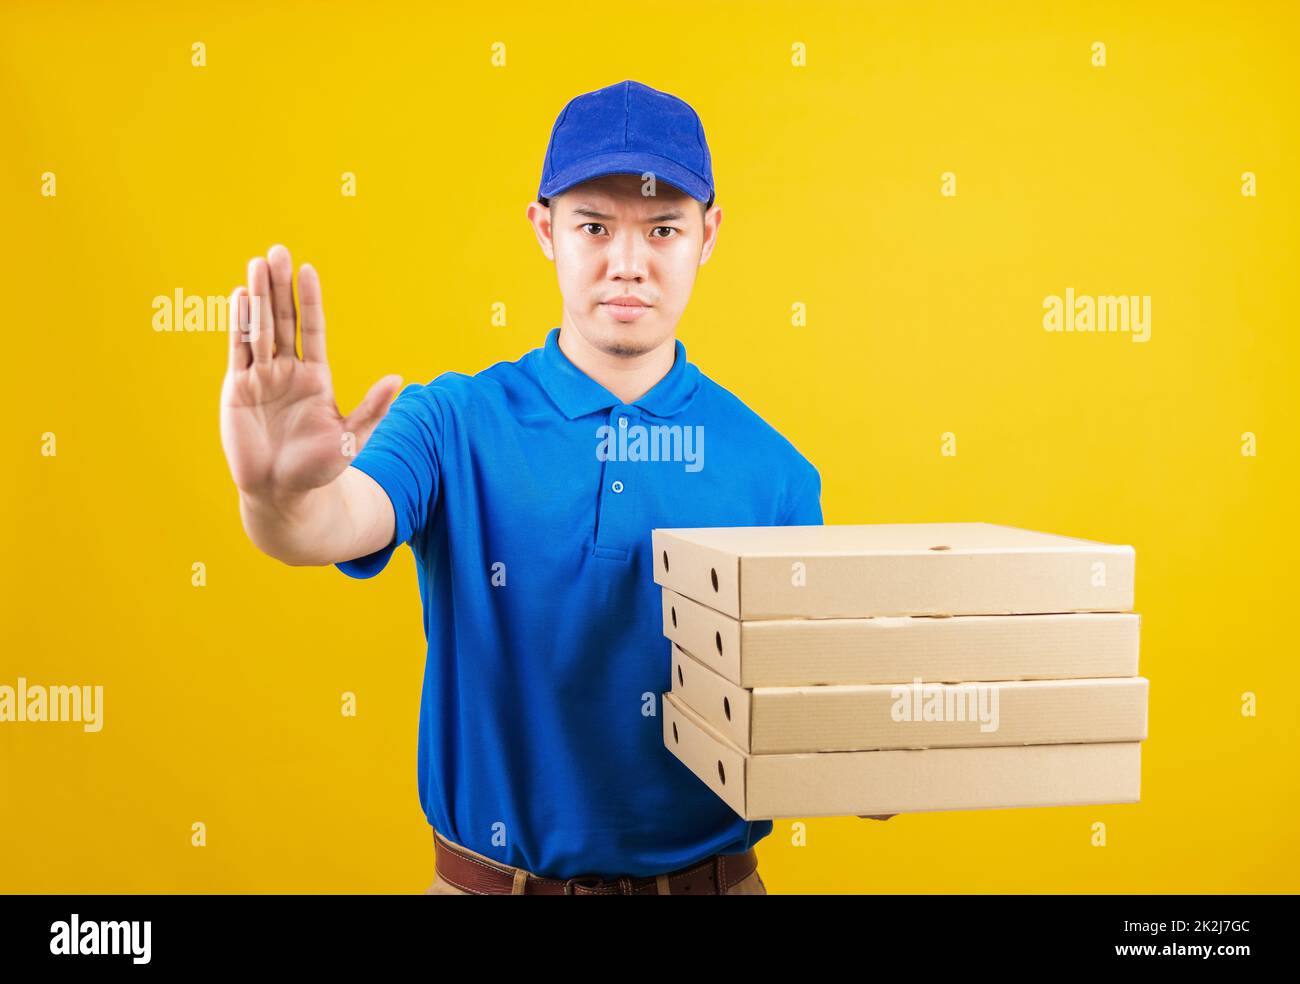 Lieferservice Mann mit blauem T-Shirt und Kappe Uniform halten Papierkiste italienische Pizzapackung und zeigen Hand-Stopp-Zeichen-Geste Stockfoto